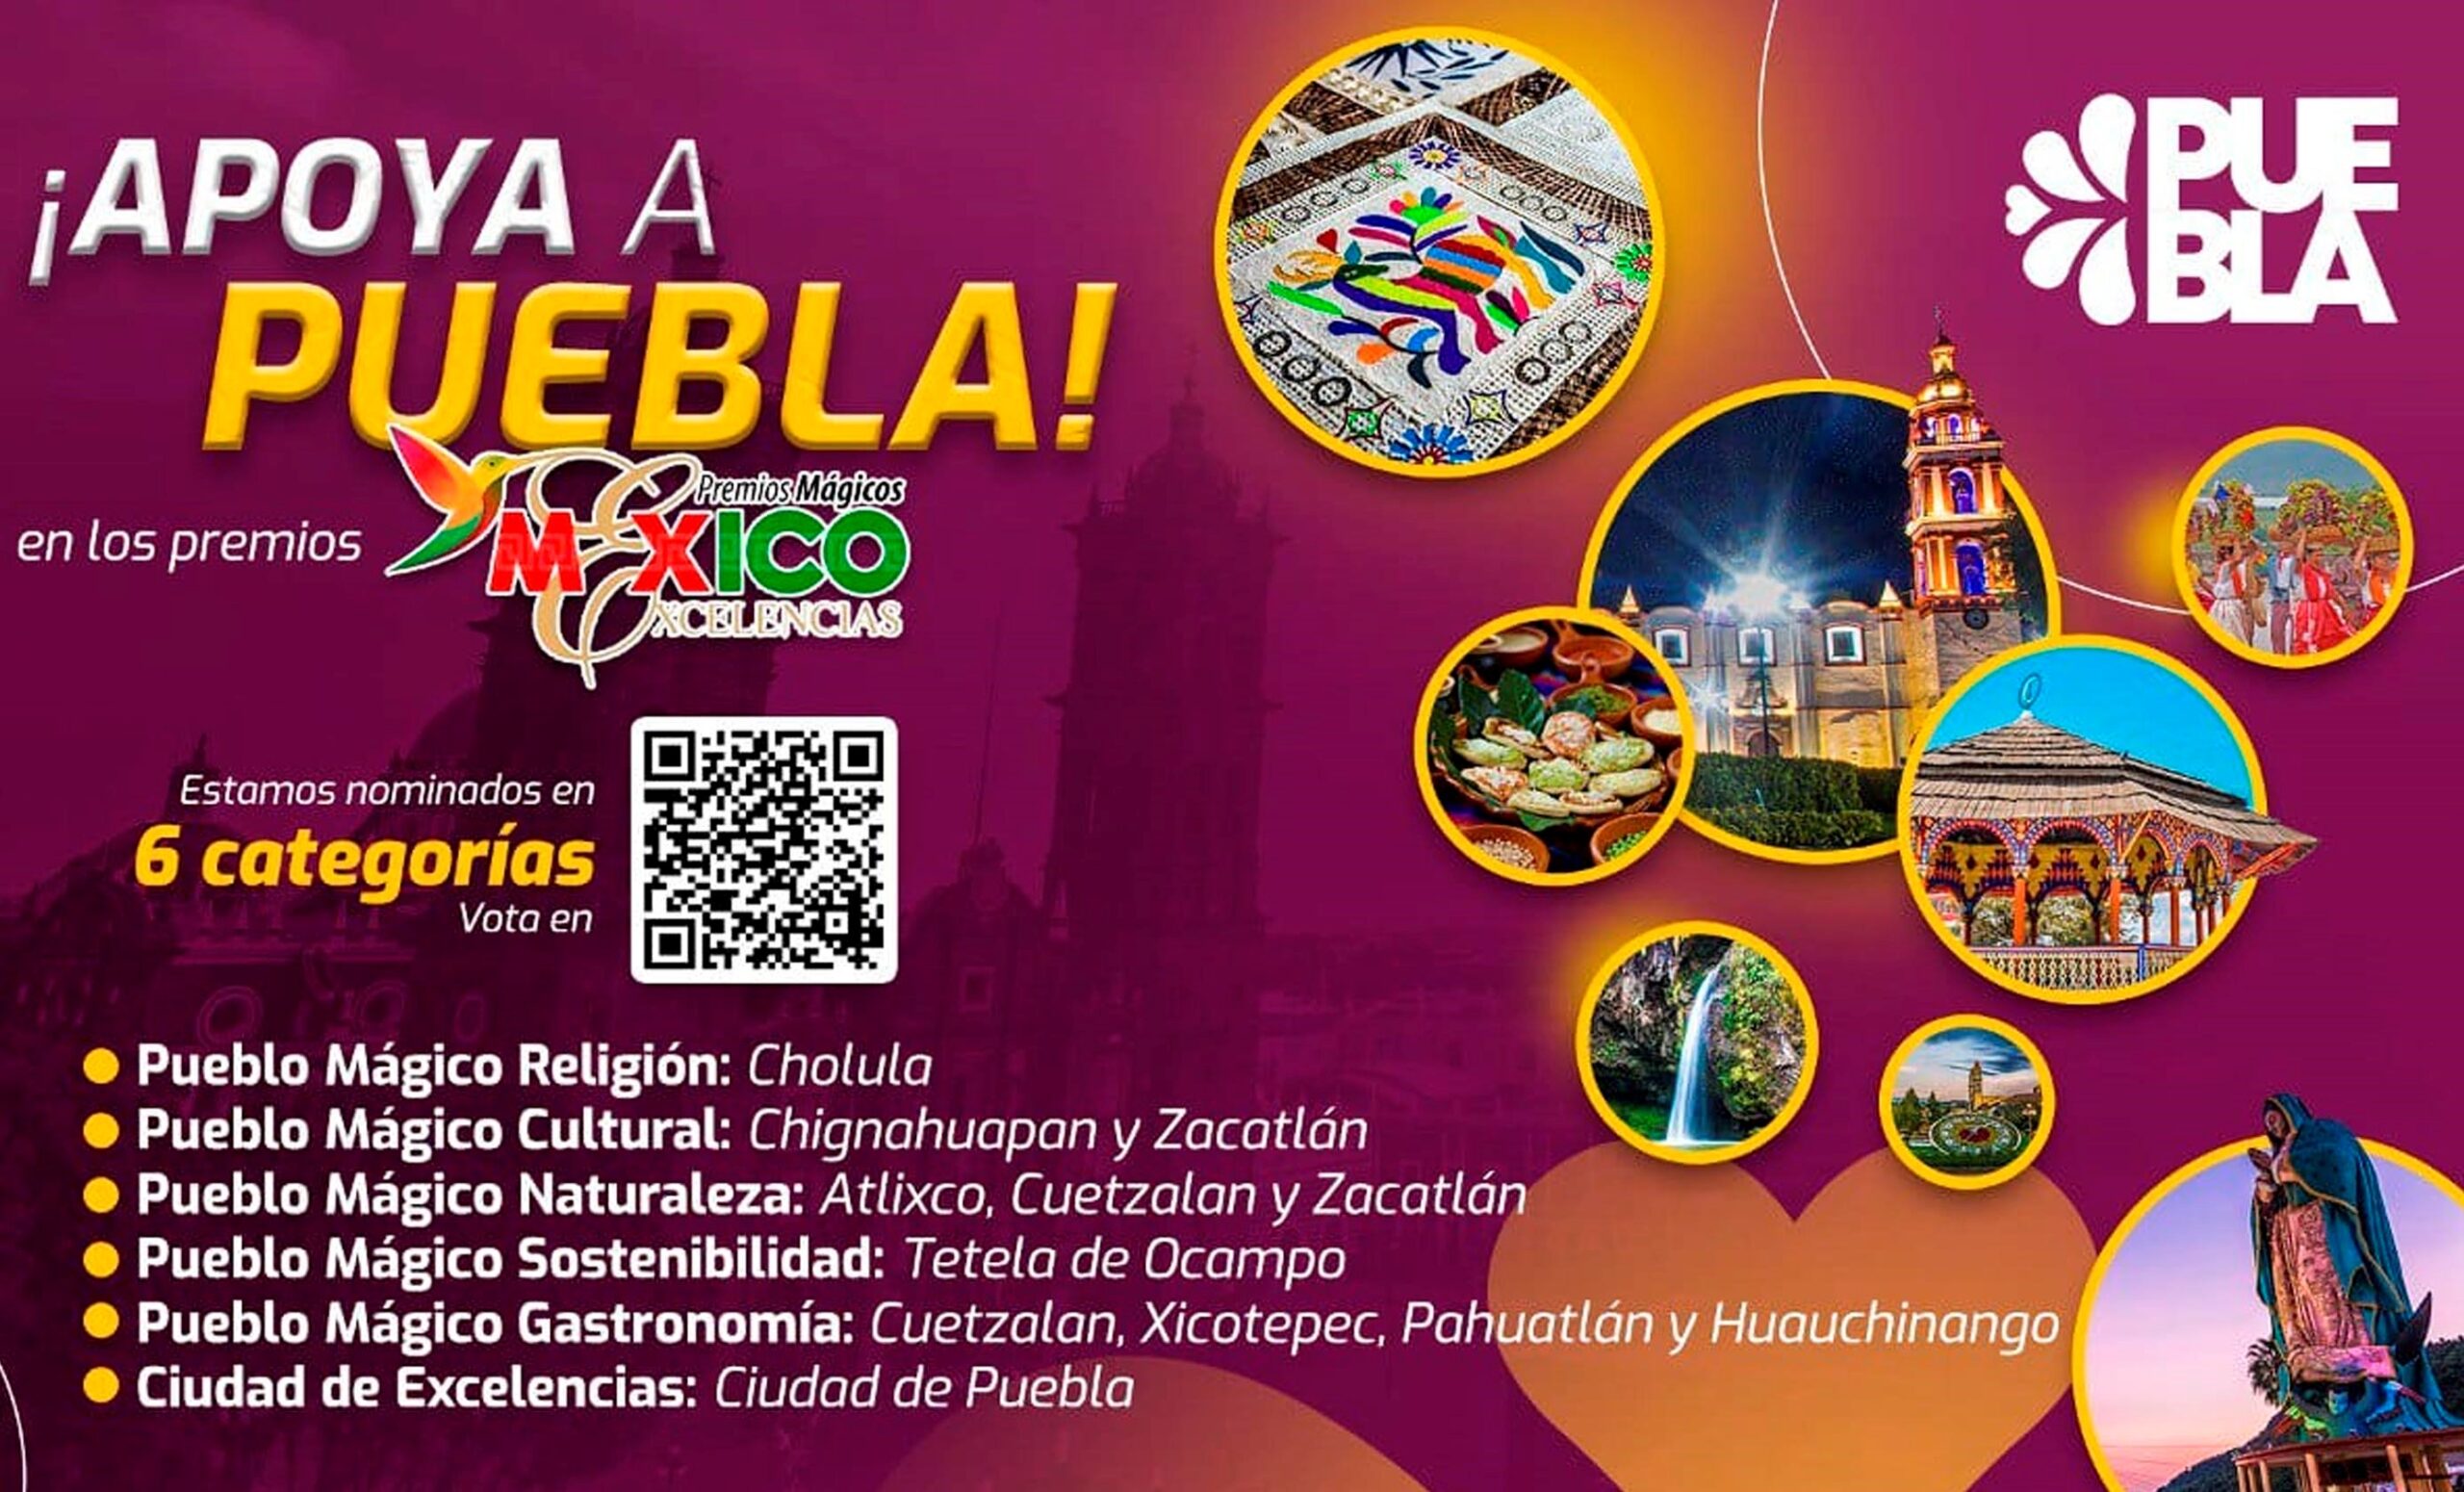 10 Pueblos Mágicos de Puebla nominados a los “Premios Mágicos por Excelencias”